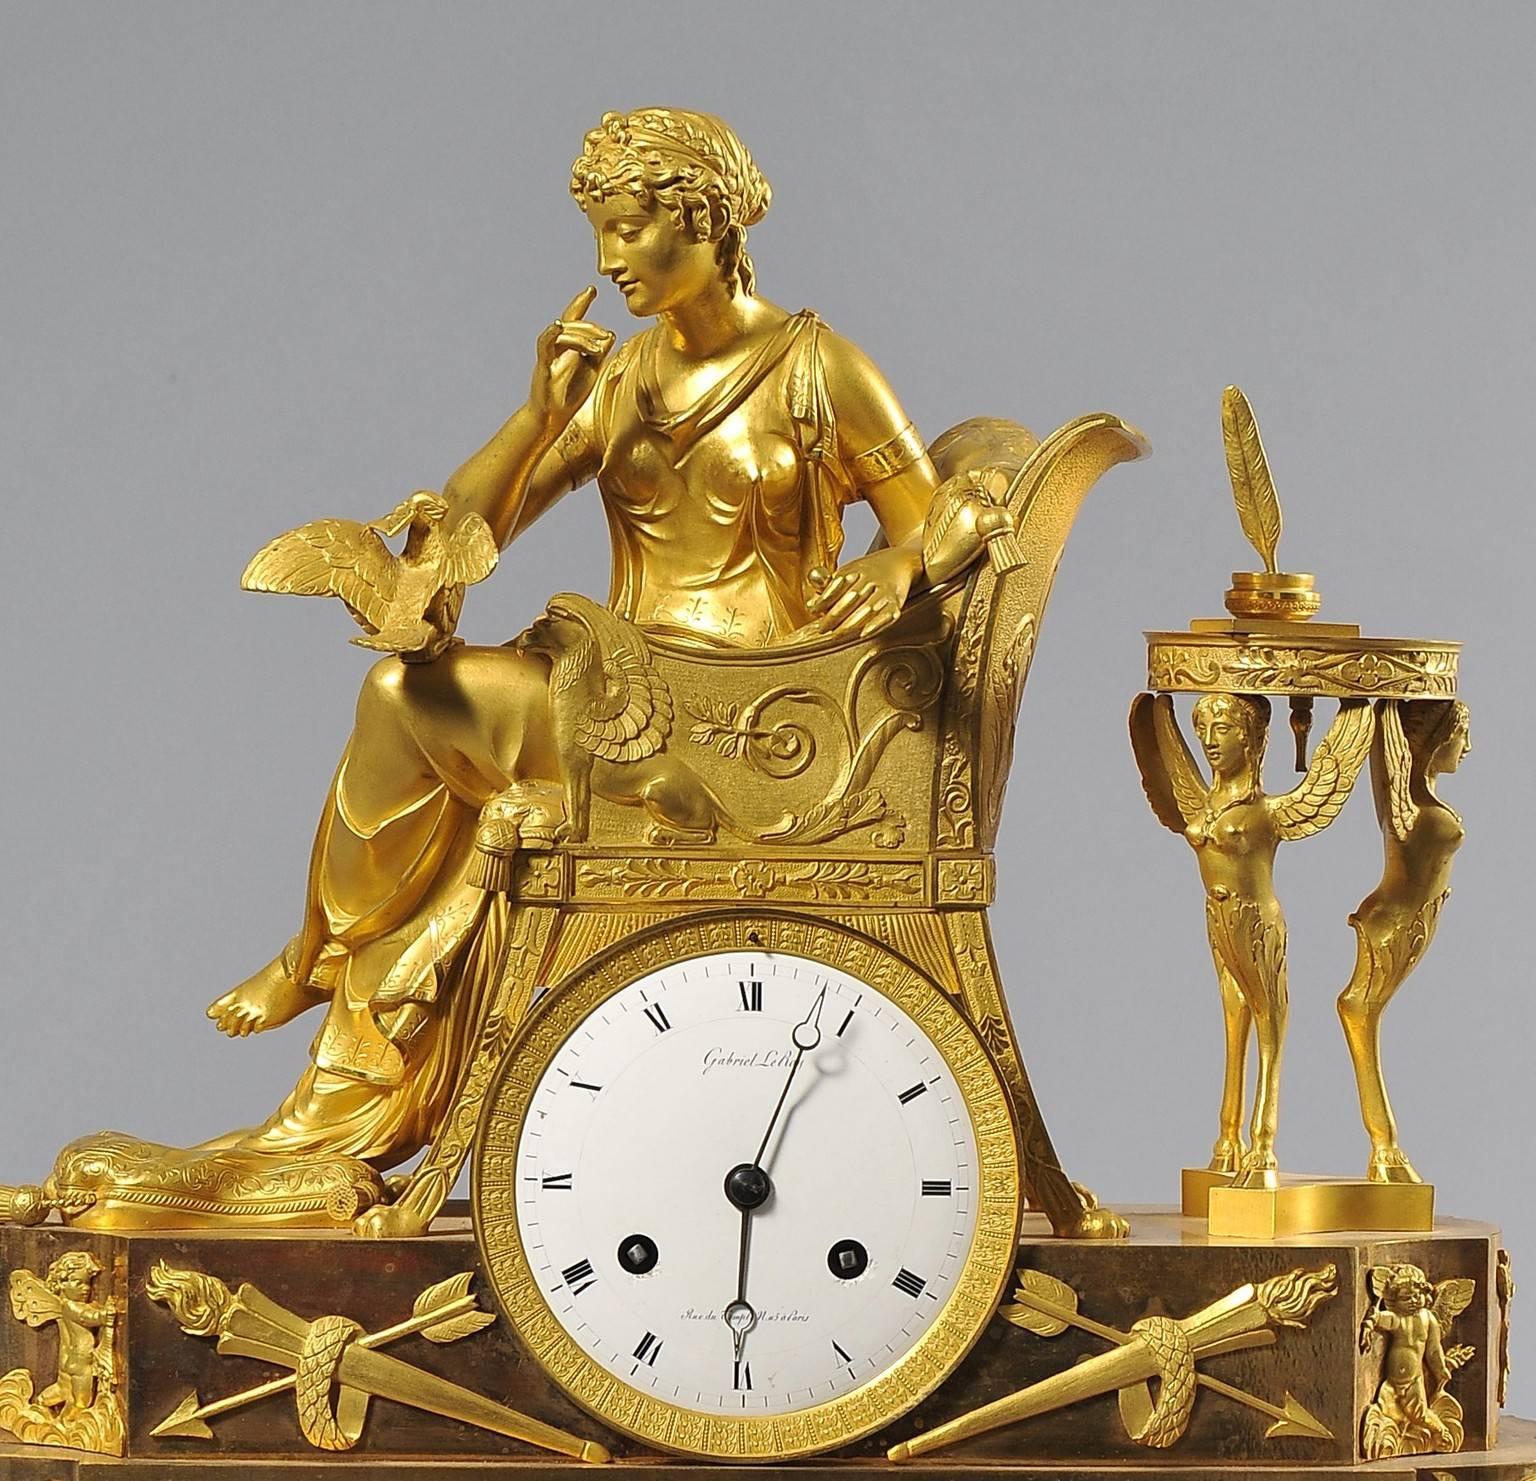 Gilded bronze clock depicting 